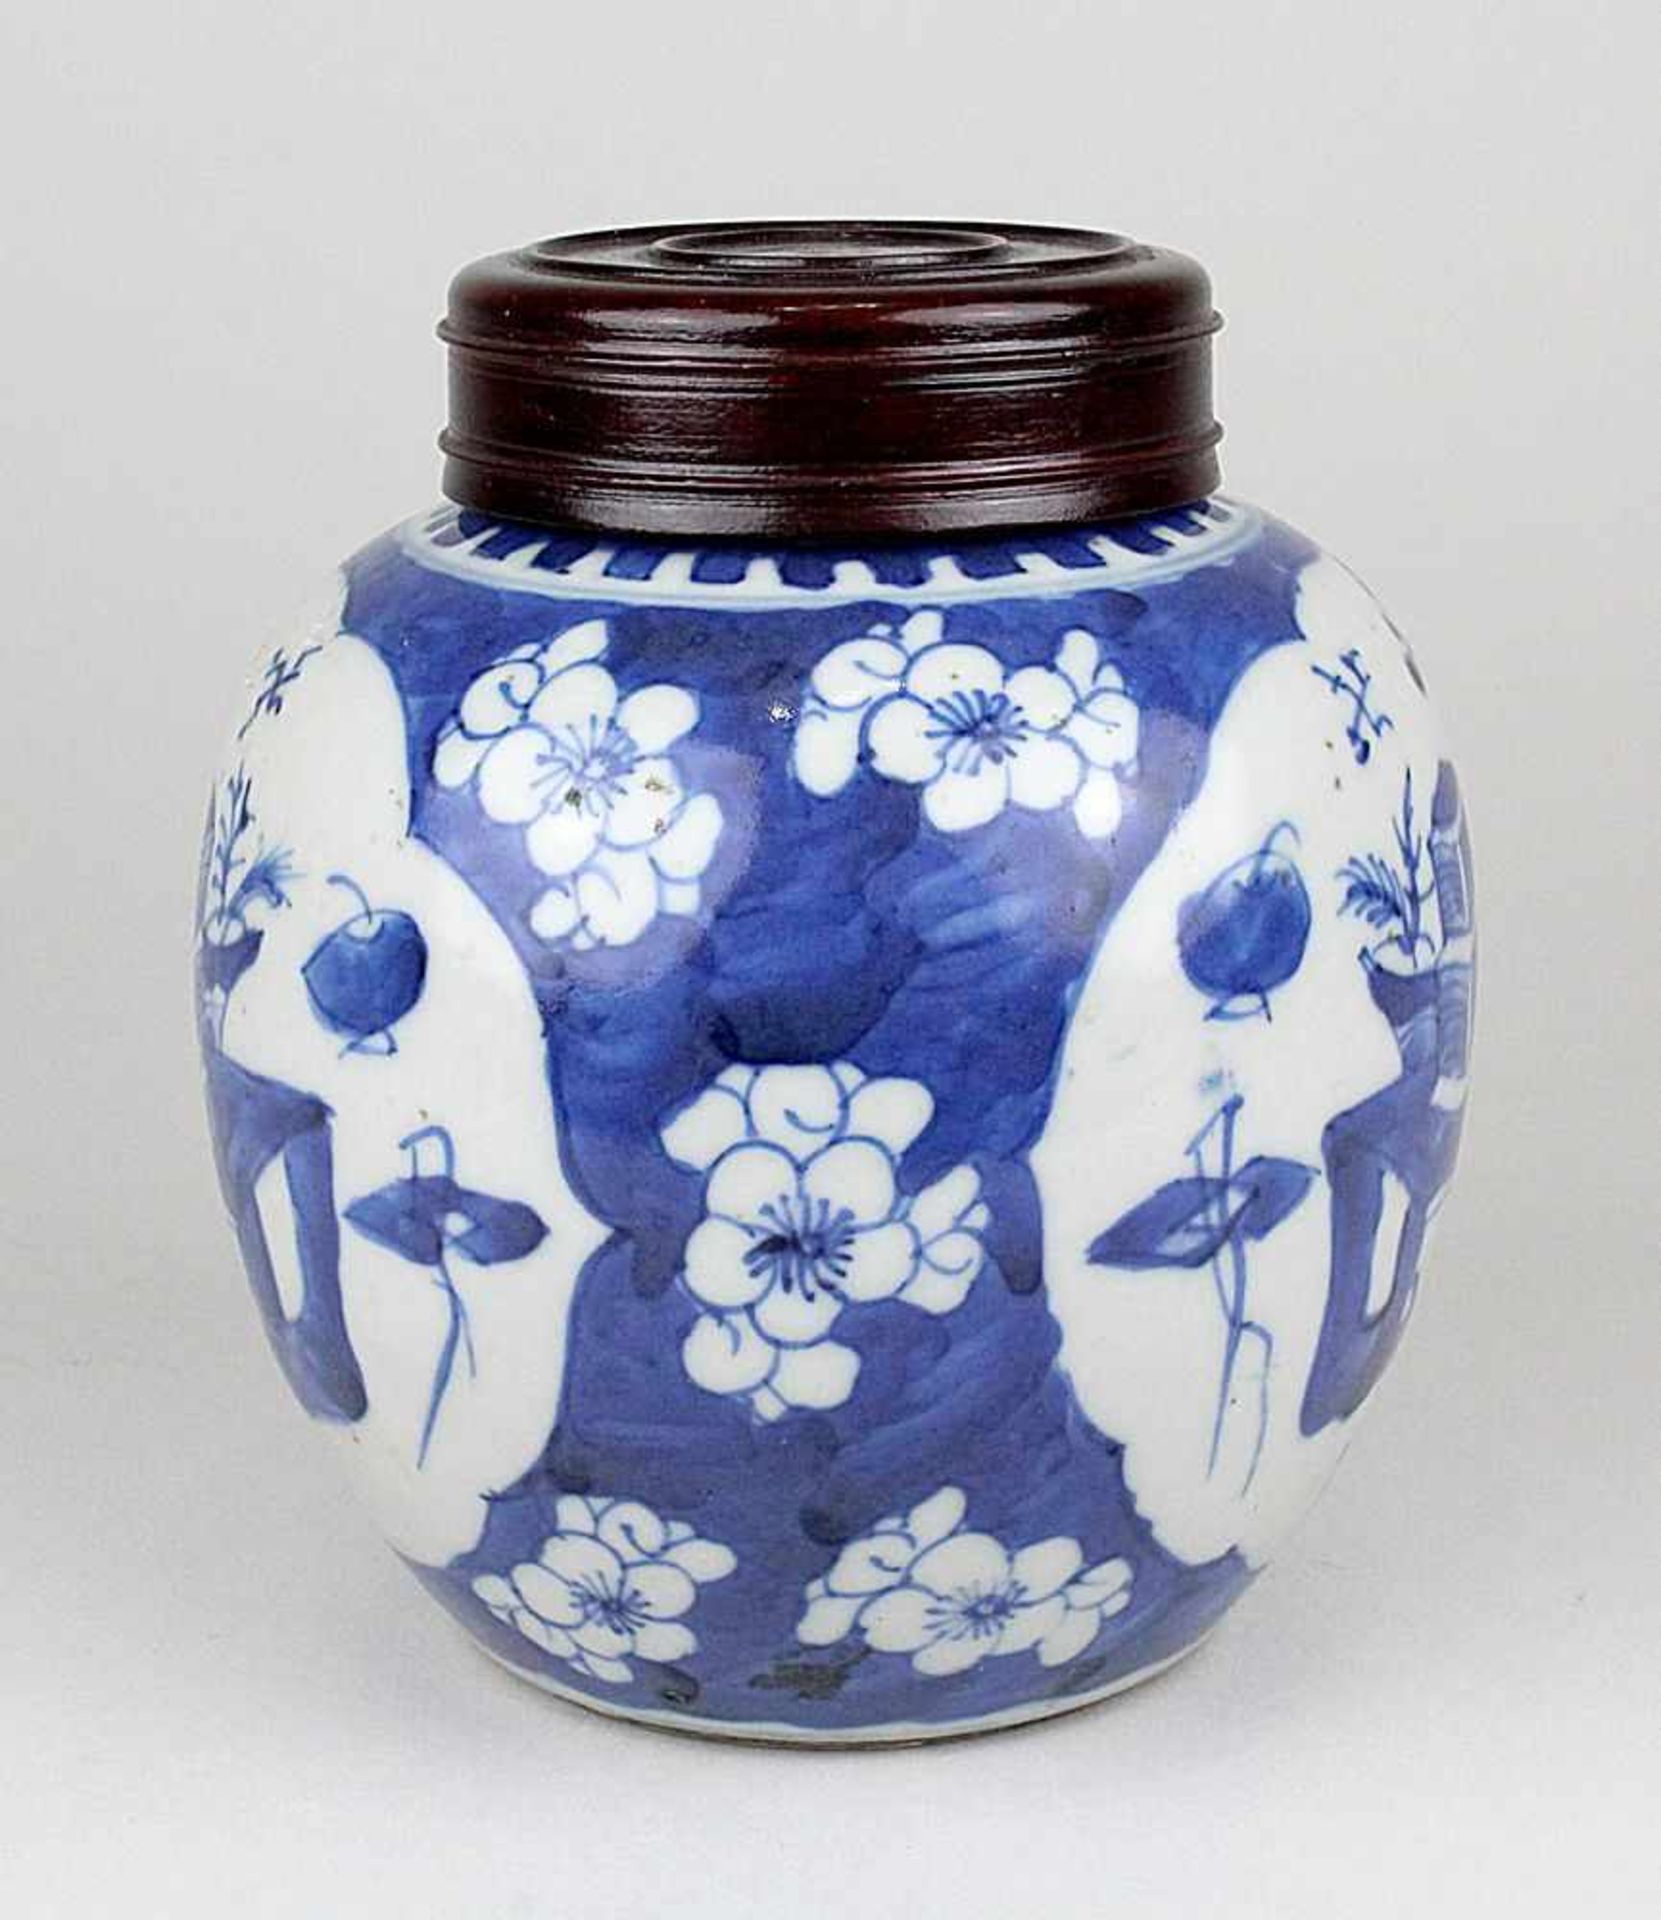 Schultertopf,China Kangxi 1654 - 1722. Porzellan mit hellblauem Scherben, unterglasur blau bemalt - Image 2 of 5